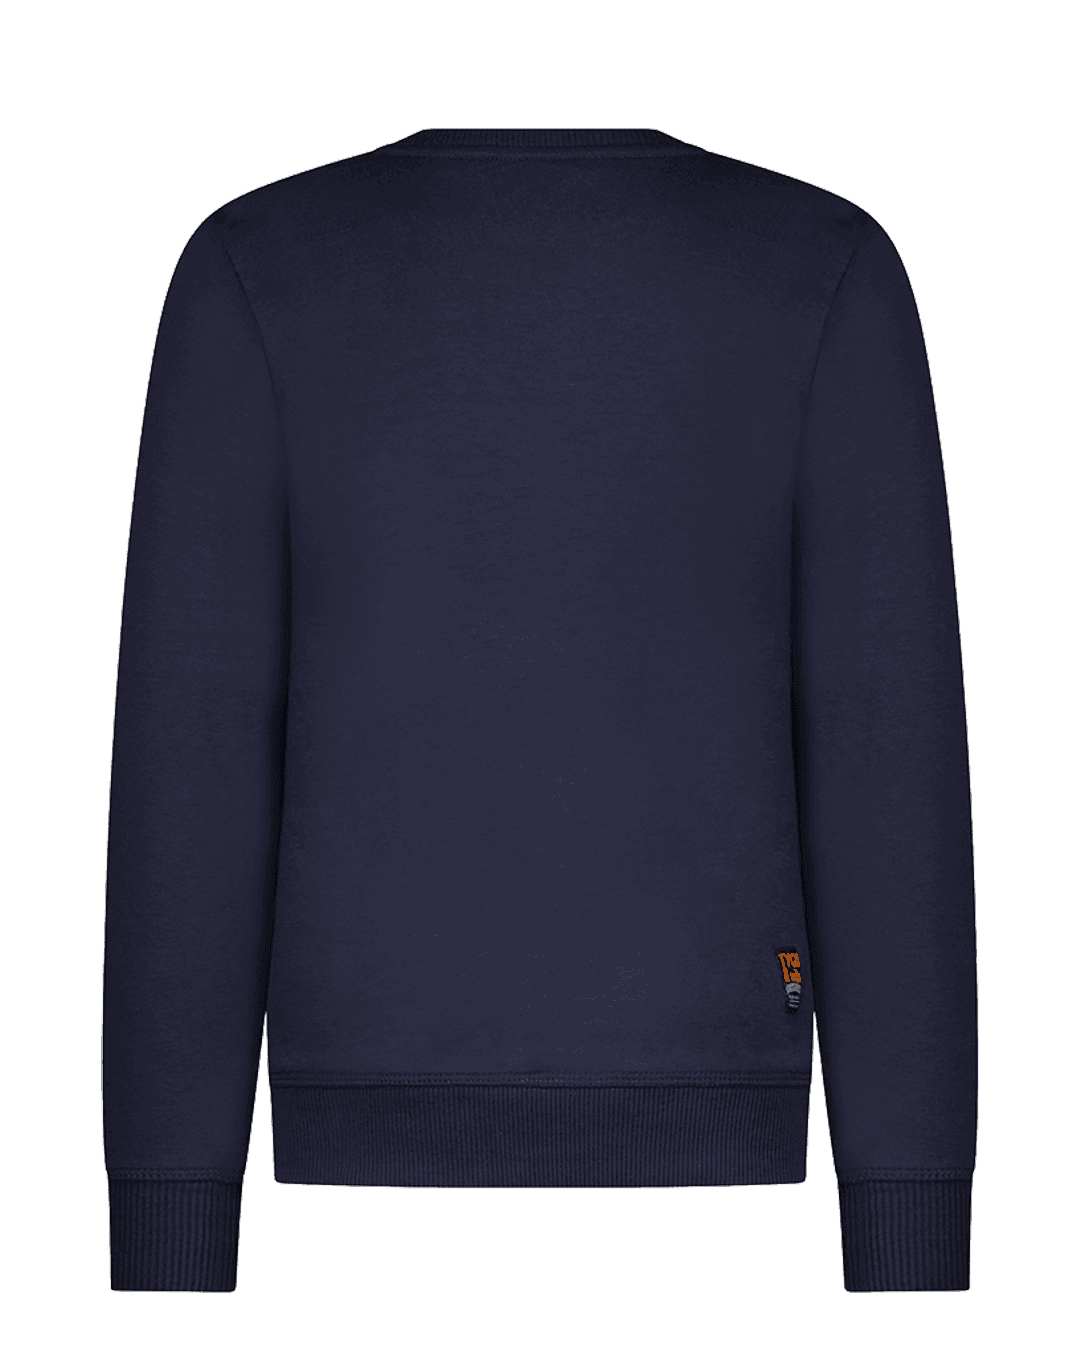 Sweater Tygo Navy - TYGO&vito